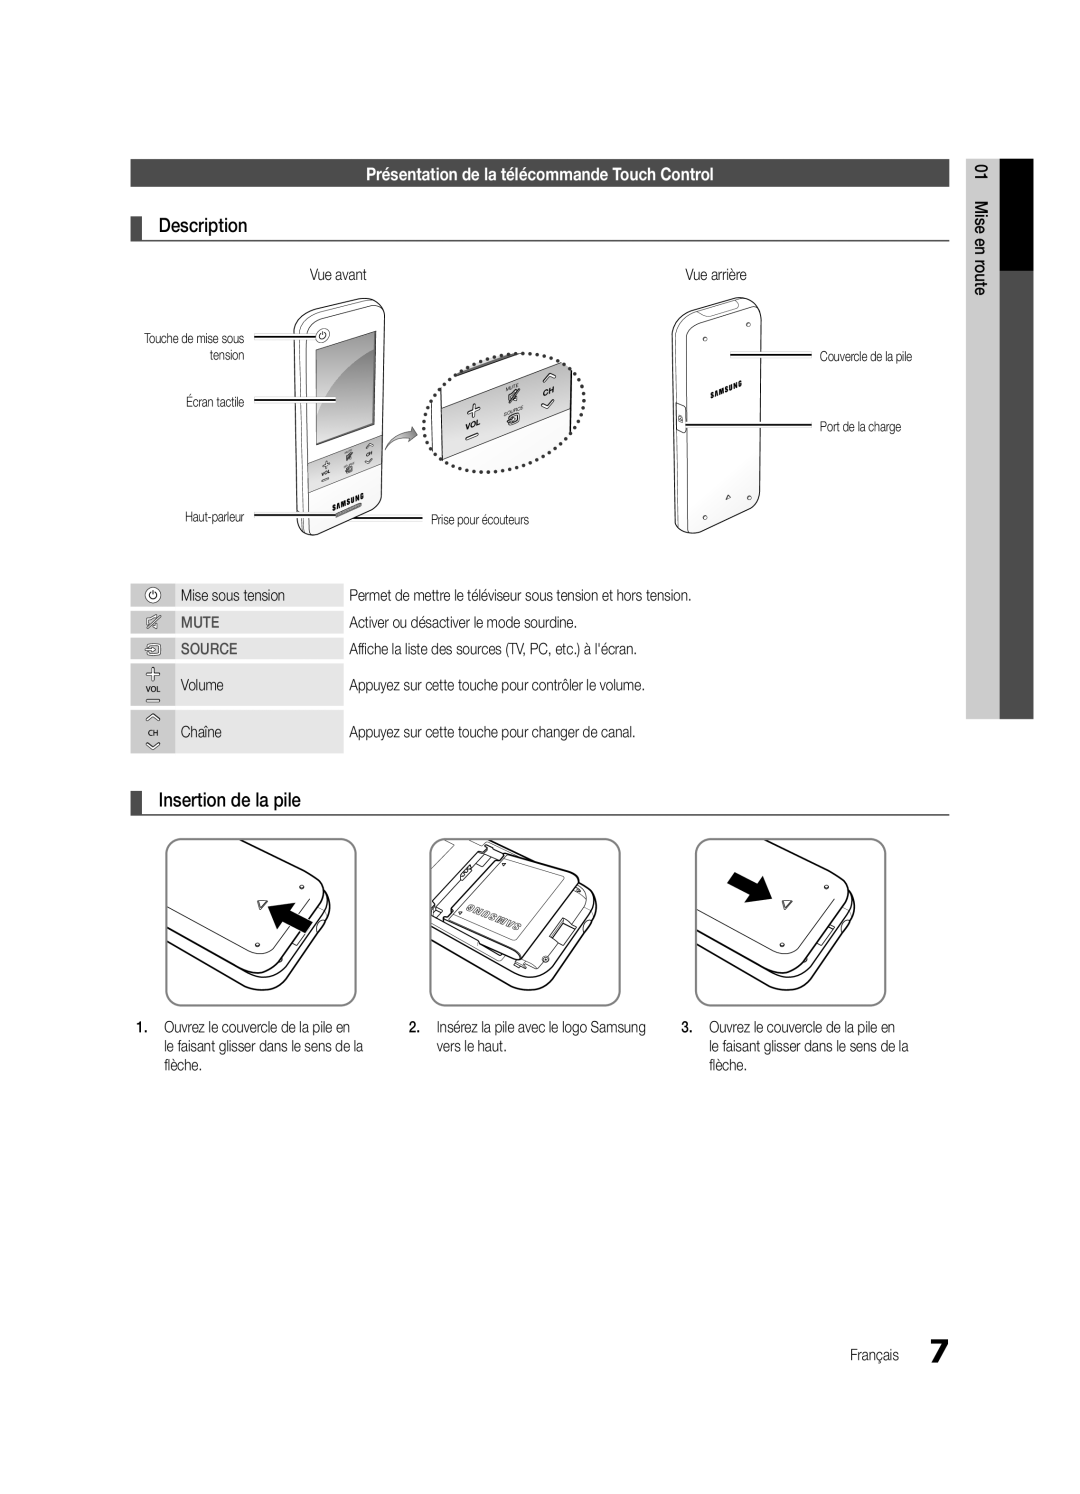 Samsung Series C9 Présentation de la télécommande Touch Control, Description, Insertion de la pile, Mute, Source 